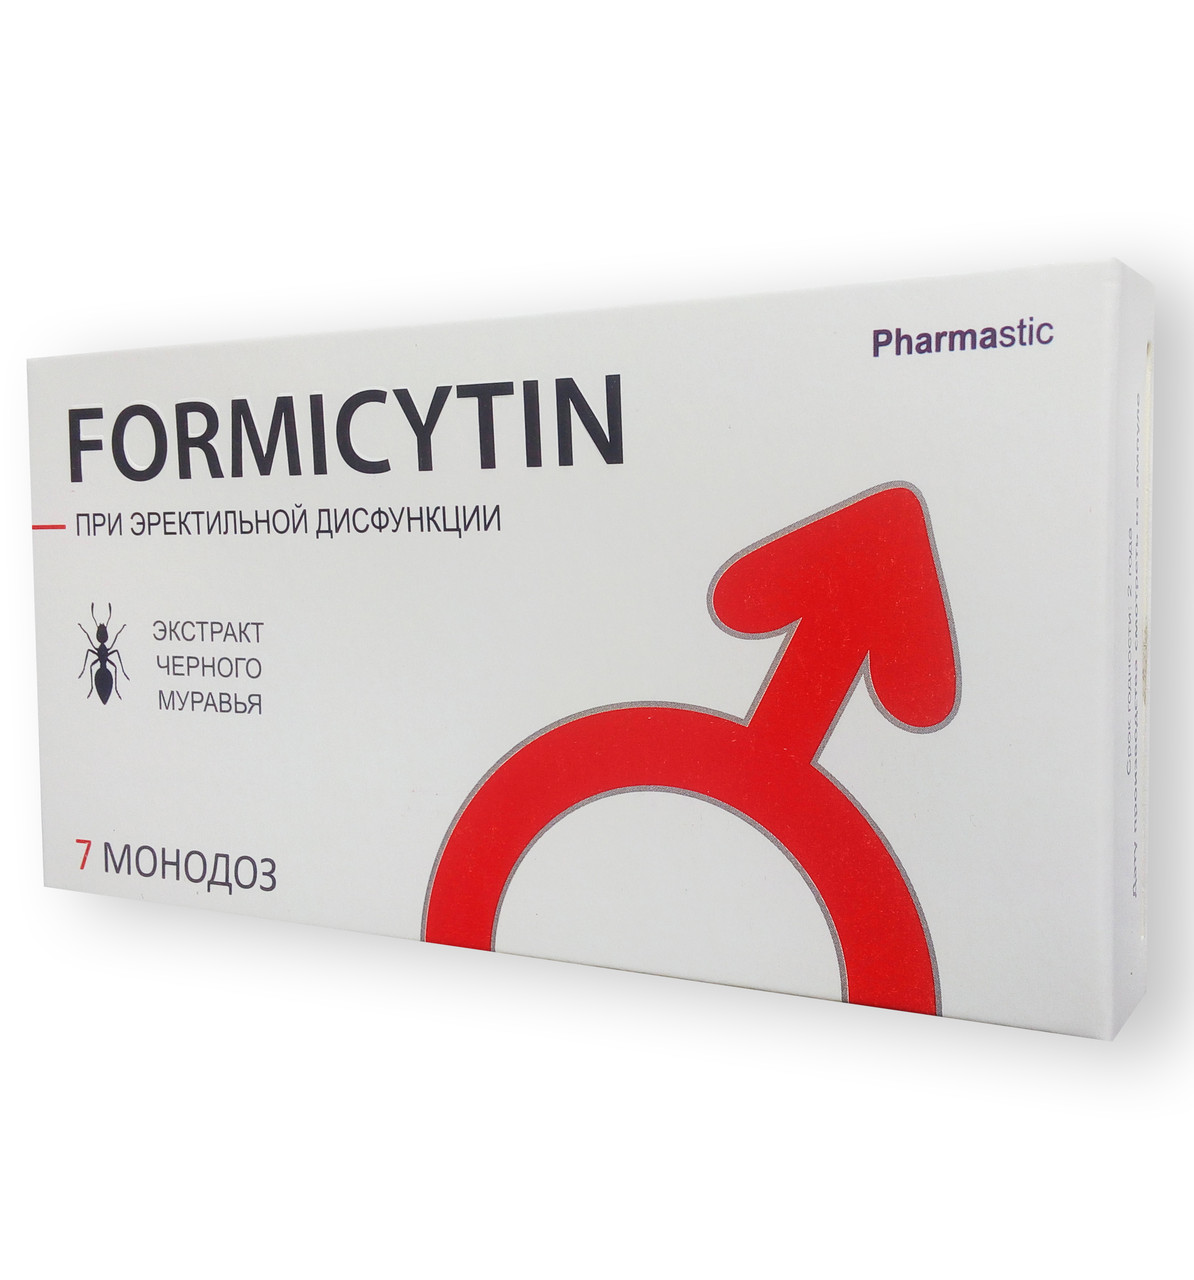 Formicytin - Засіб для підвищення потенції (Форміцитин)